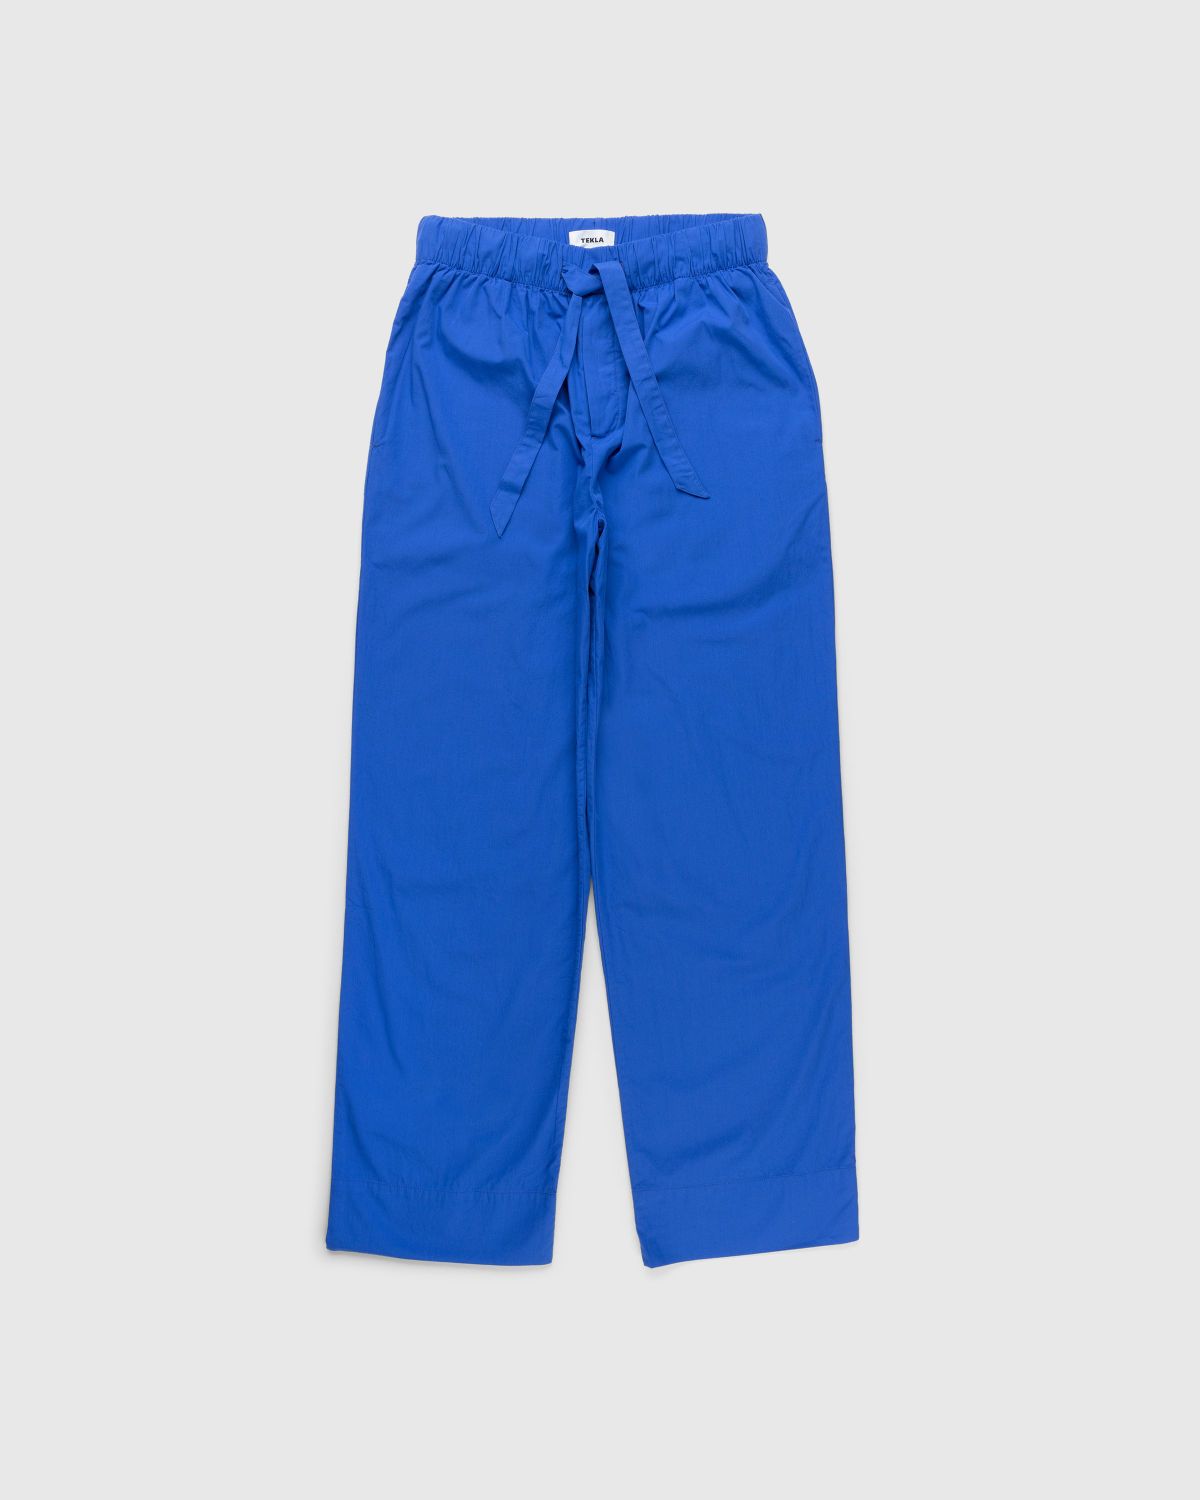 Tekla – Cotton Poplin Pyjamas Pants Royal Blue - Pyjamas - Blue - Image 1